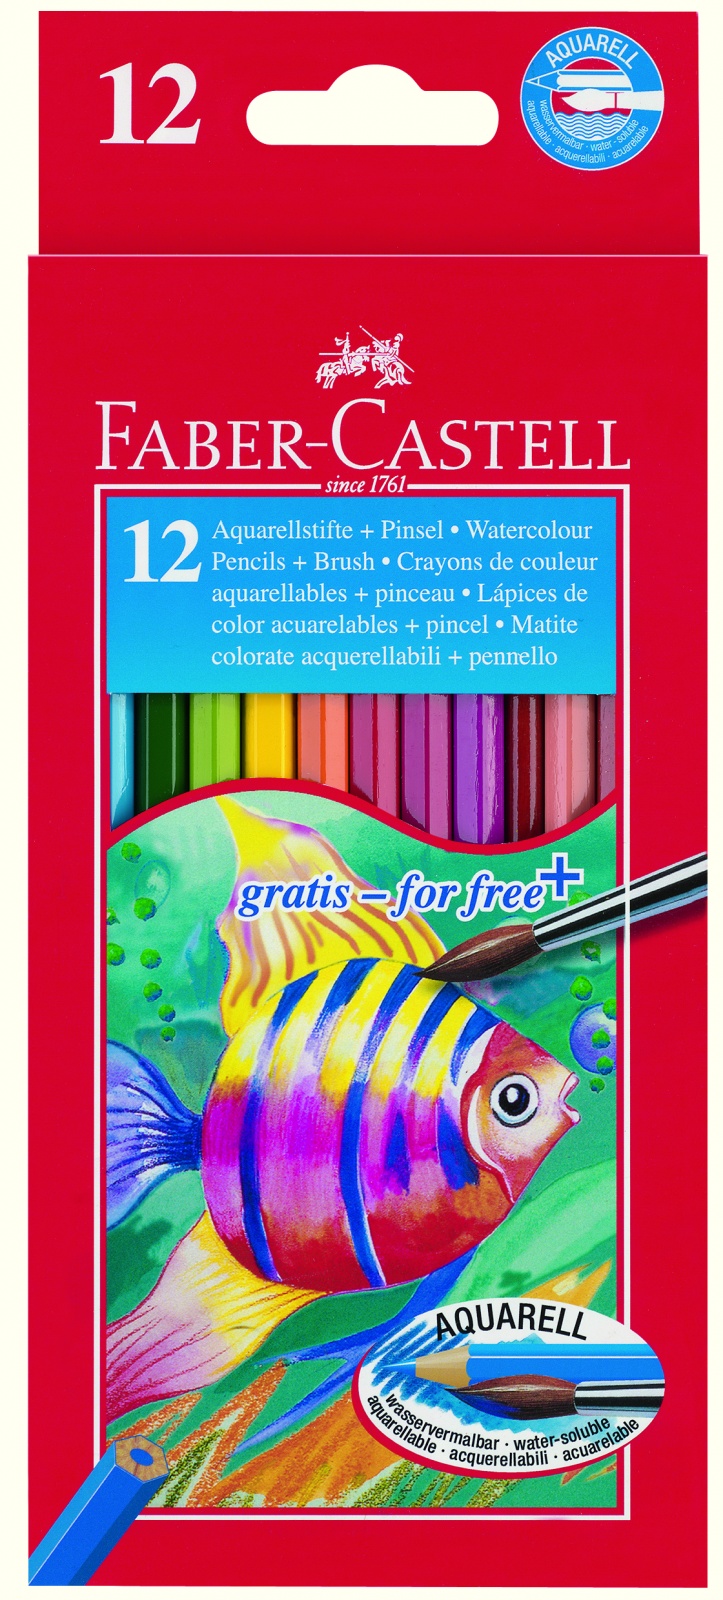 Faber-Castell aquarell színesceruza 12 db + ecset Faber-Castell aquarell színesceruza 12 db + 1 db ecset Leírás	Tulajdonságok - Hatszögletű aquarell színesceruza készlet, élénk színekkel - Száraz és nedves technikához egyaránt használható - Környezet és bőrbarát termék - Kiszerelés: 12 db-os készlet + 1 db ecset